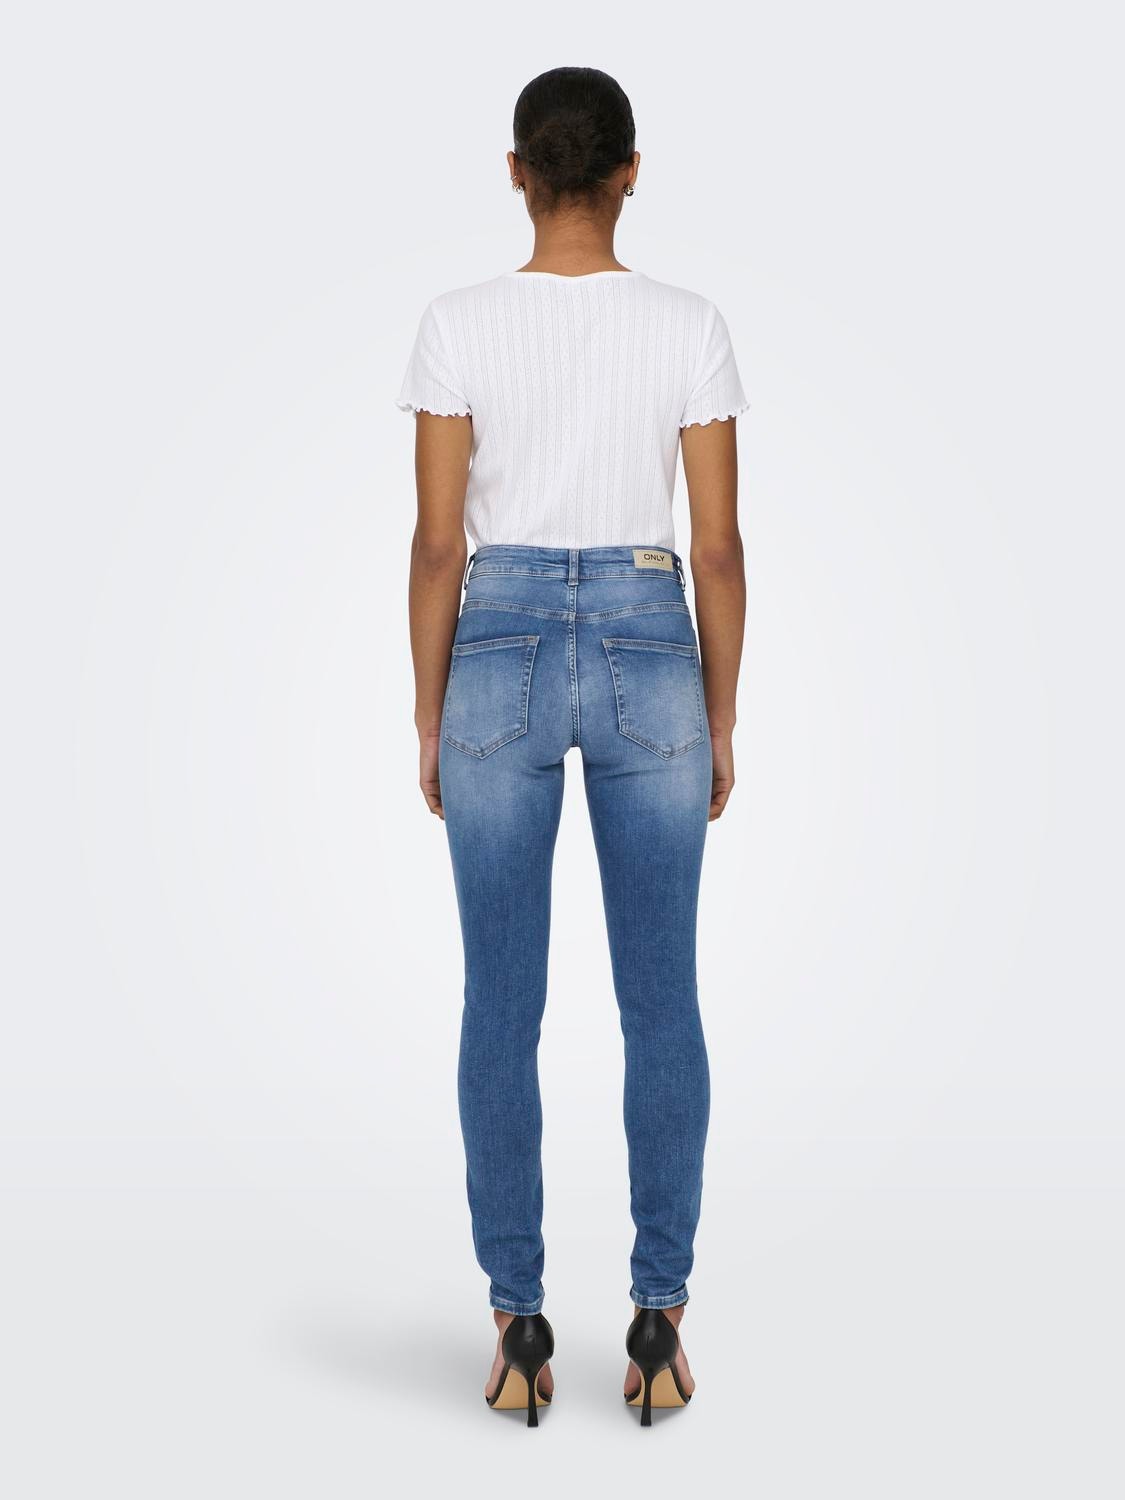 ONLY Skinny Fit Mittlere Taille Zerrissene Säume Jeans -Medium Blue Denim - 15244609